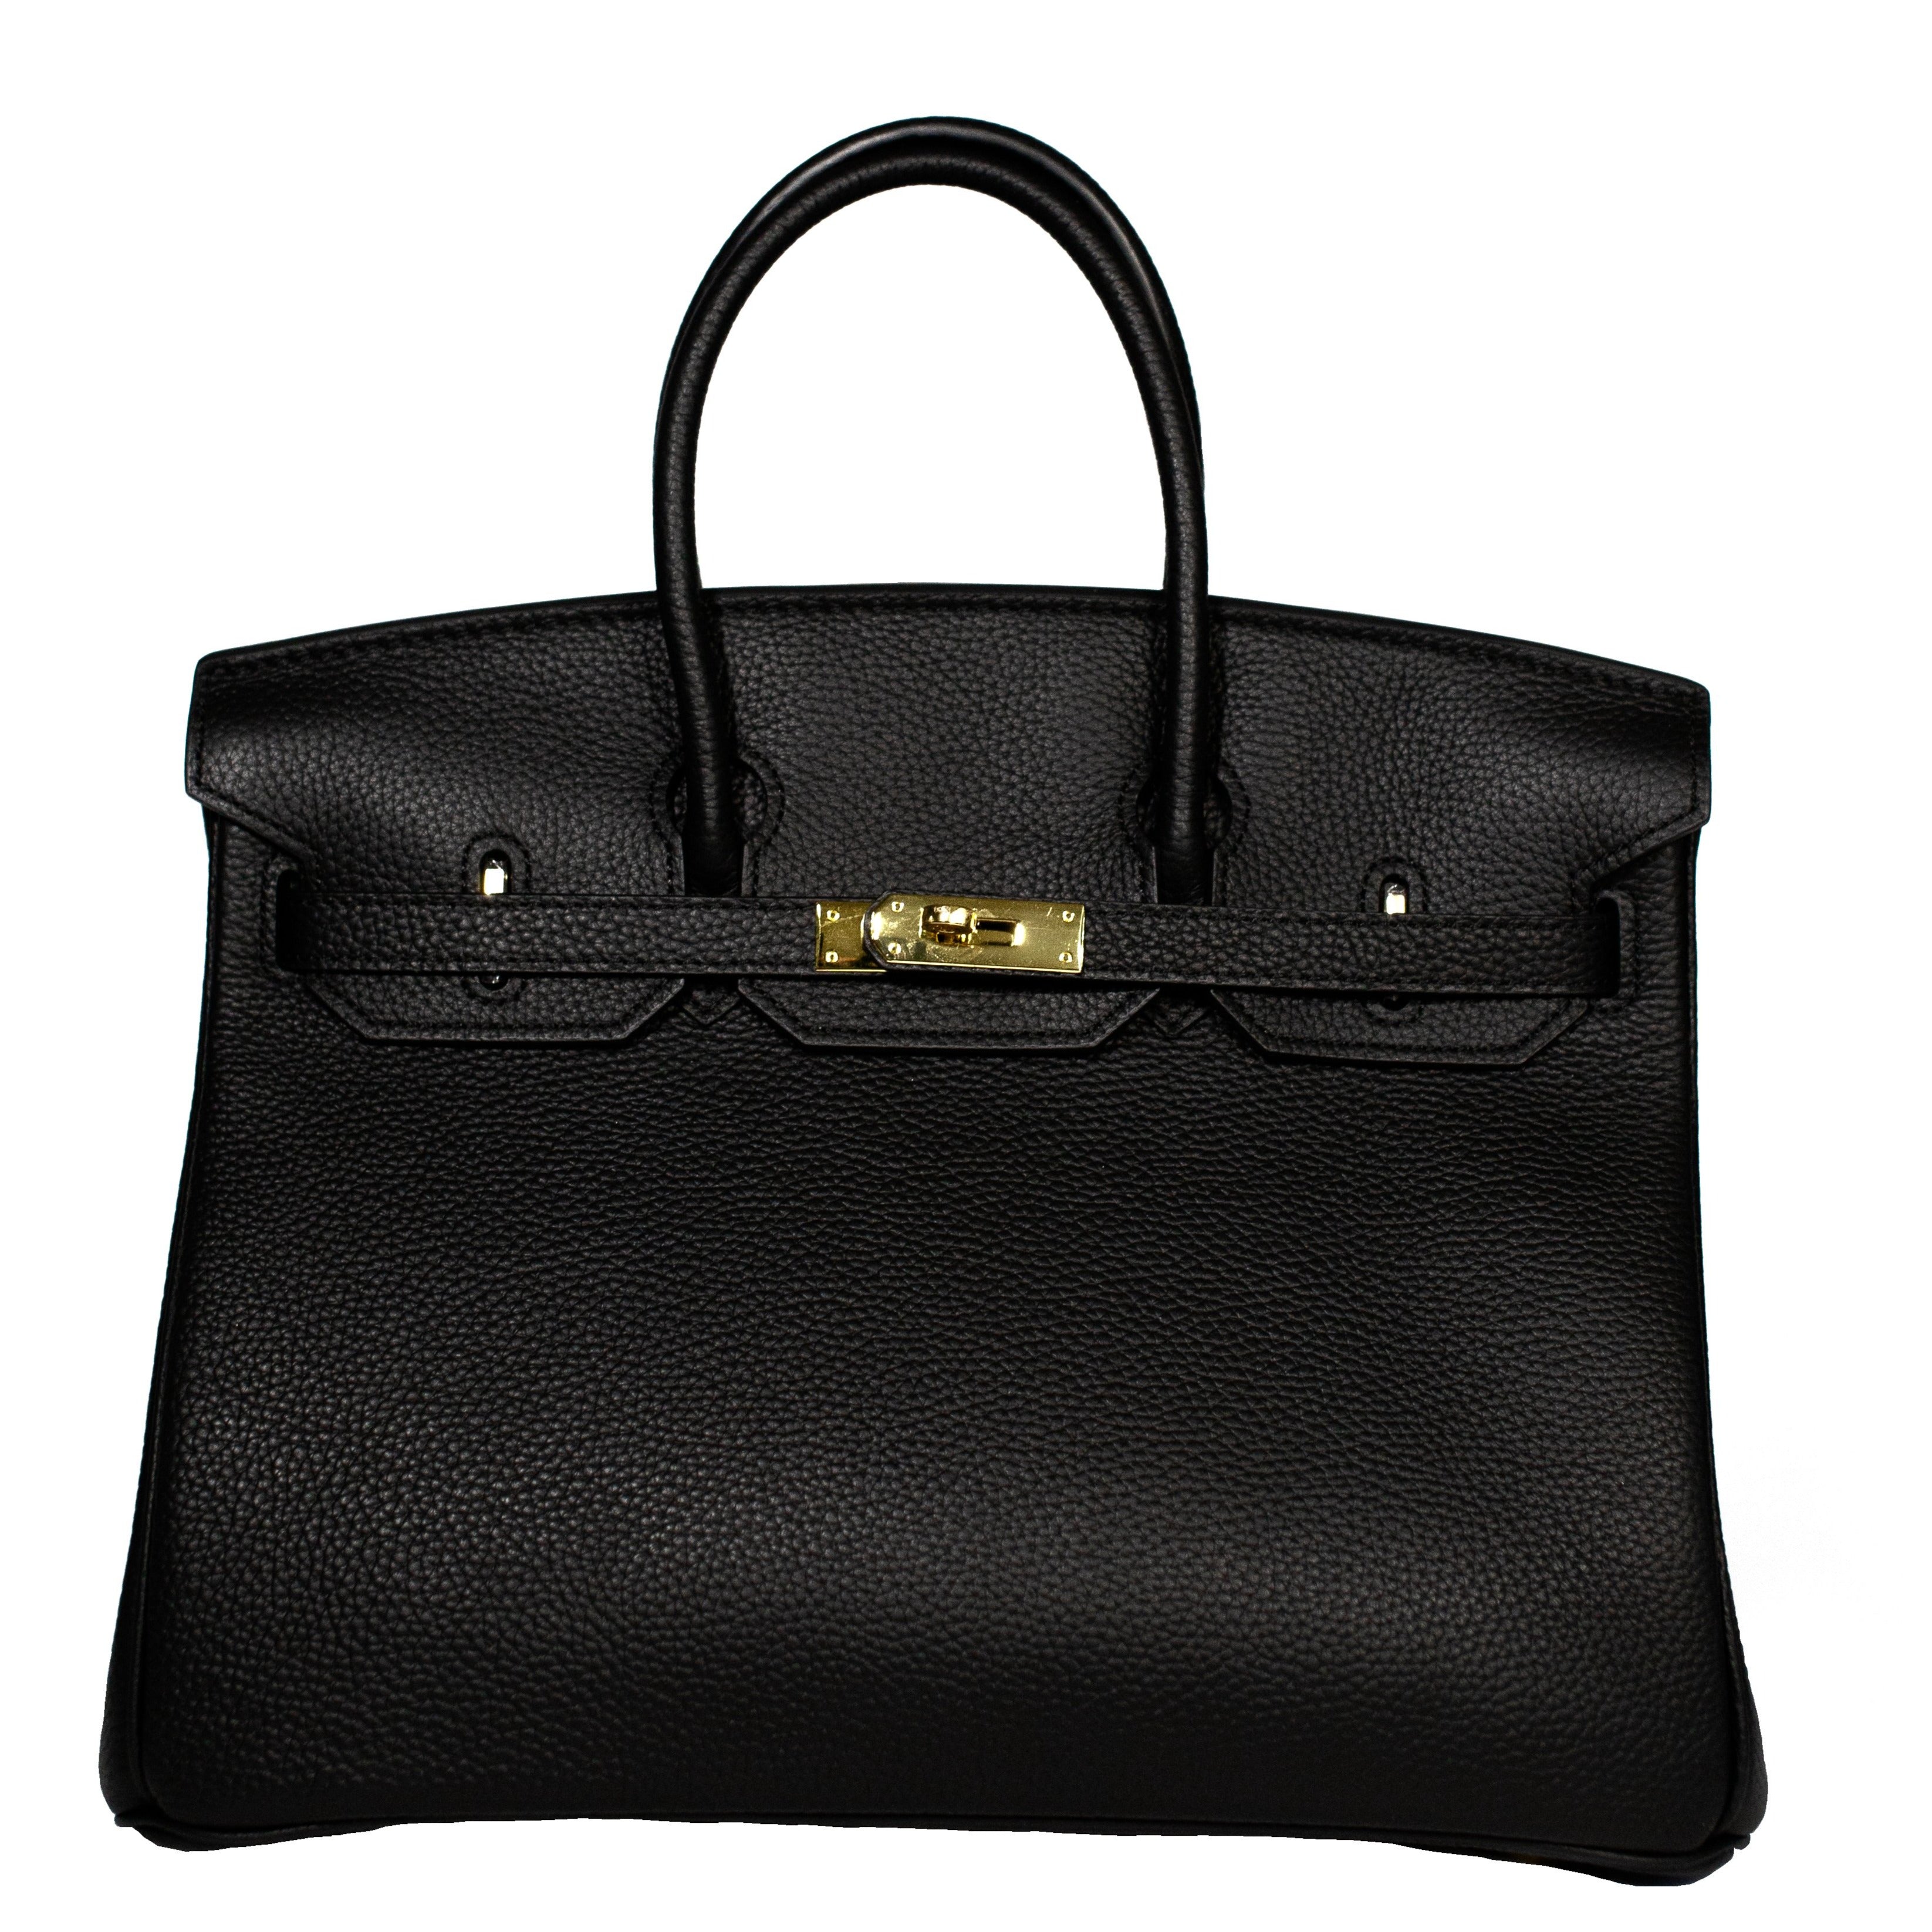 Birkina Handbag Togo Leather - BLACK